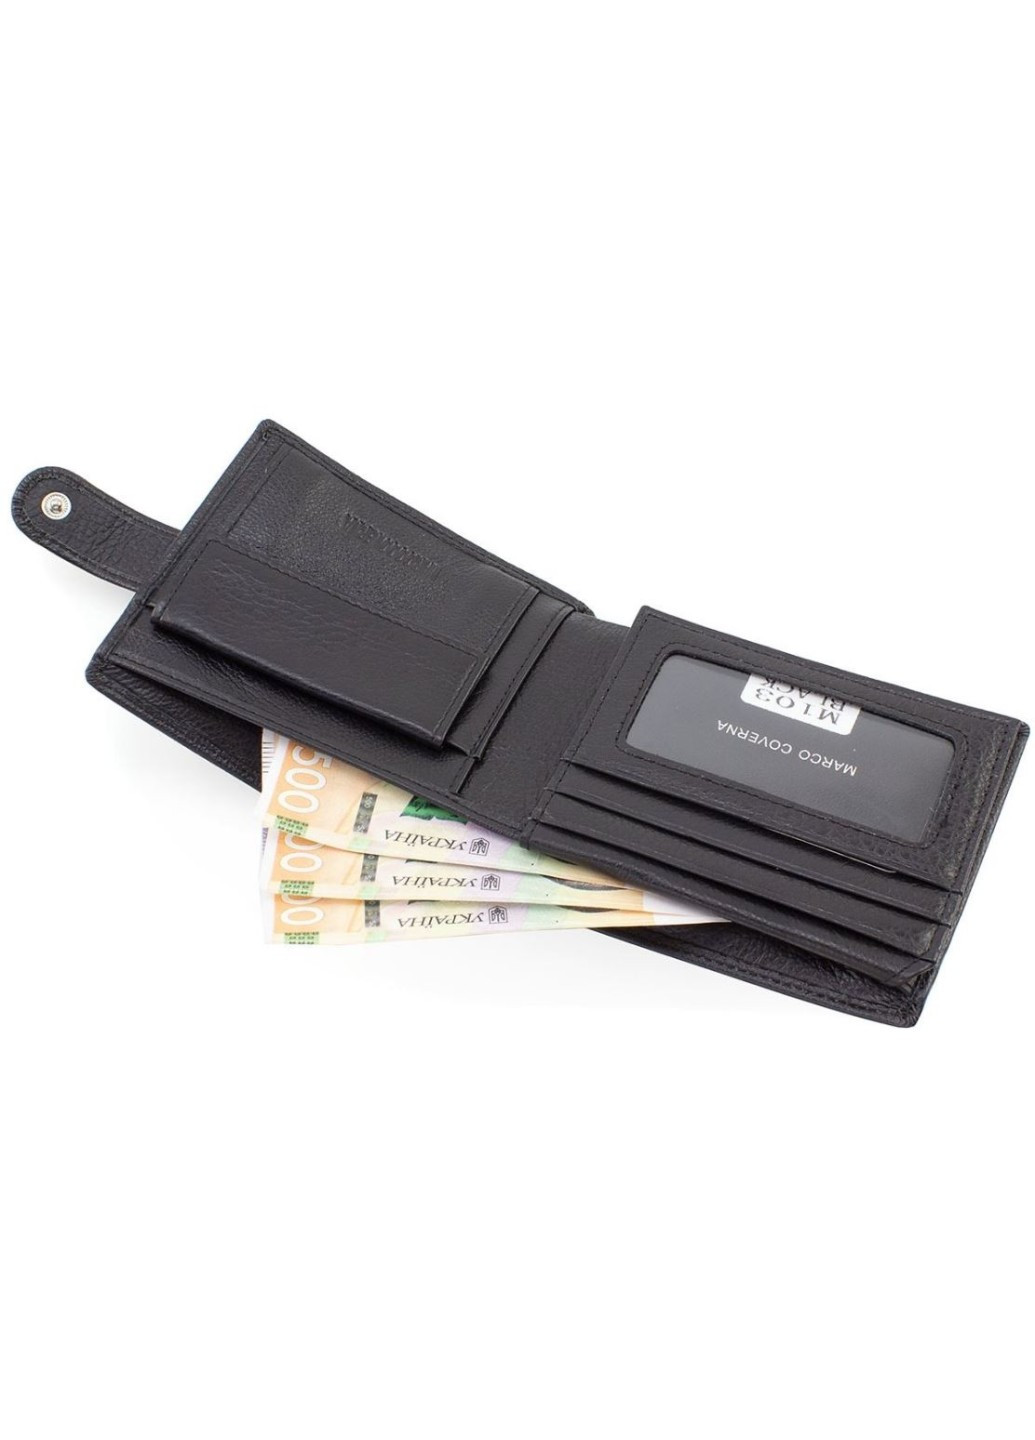 Місткий гаманець зі шкіри із секцією для документів 12х10 M103 (21597) чорний Marco Coverna (259737040)